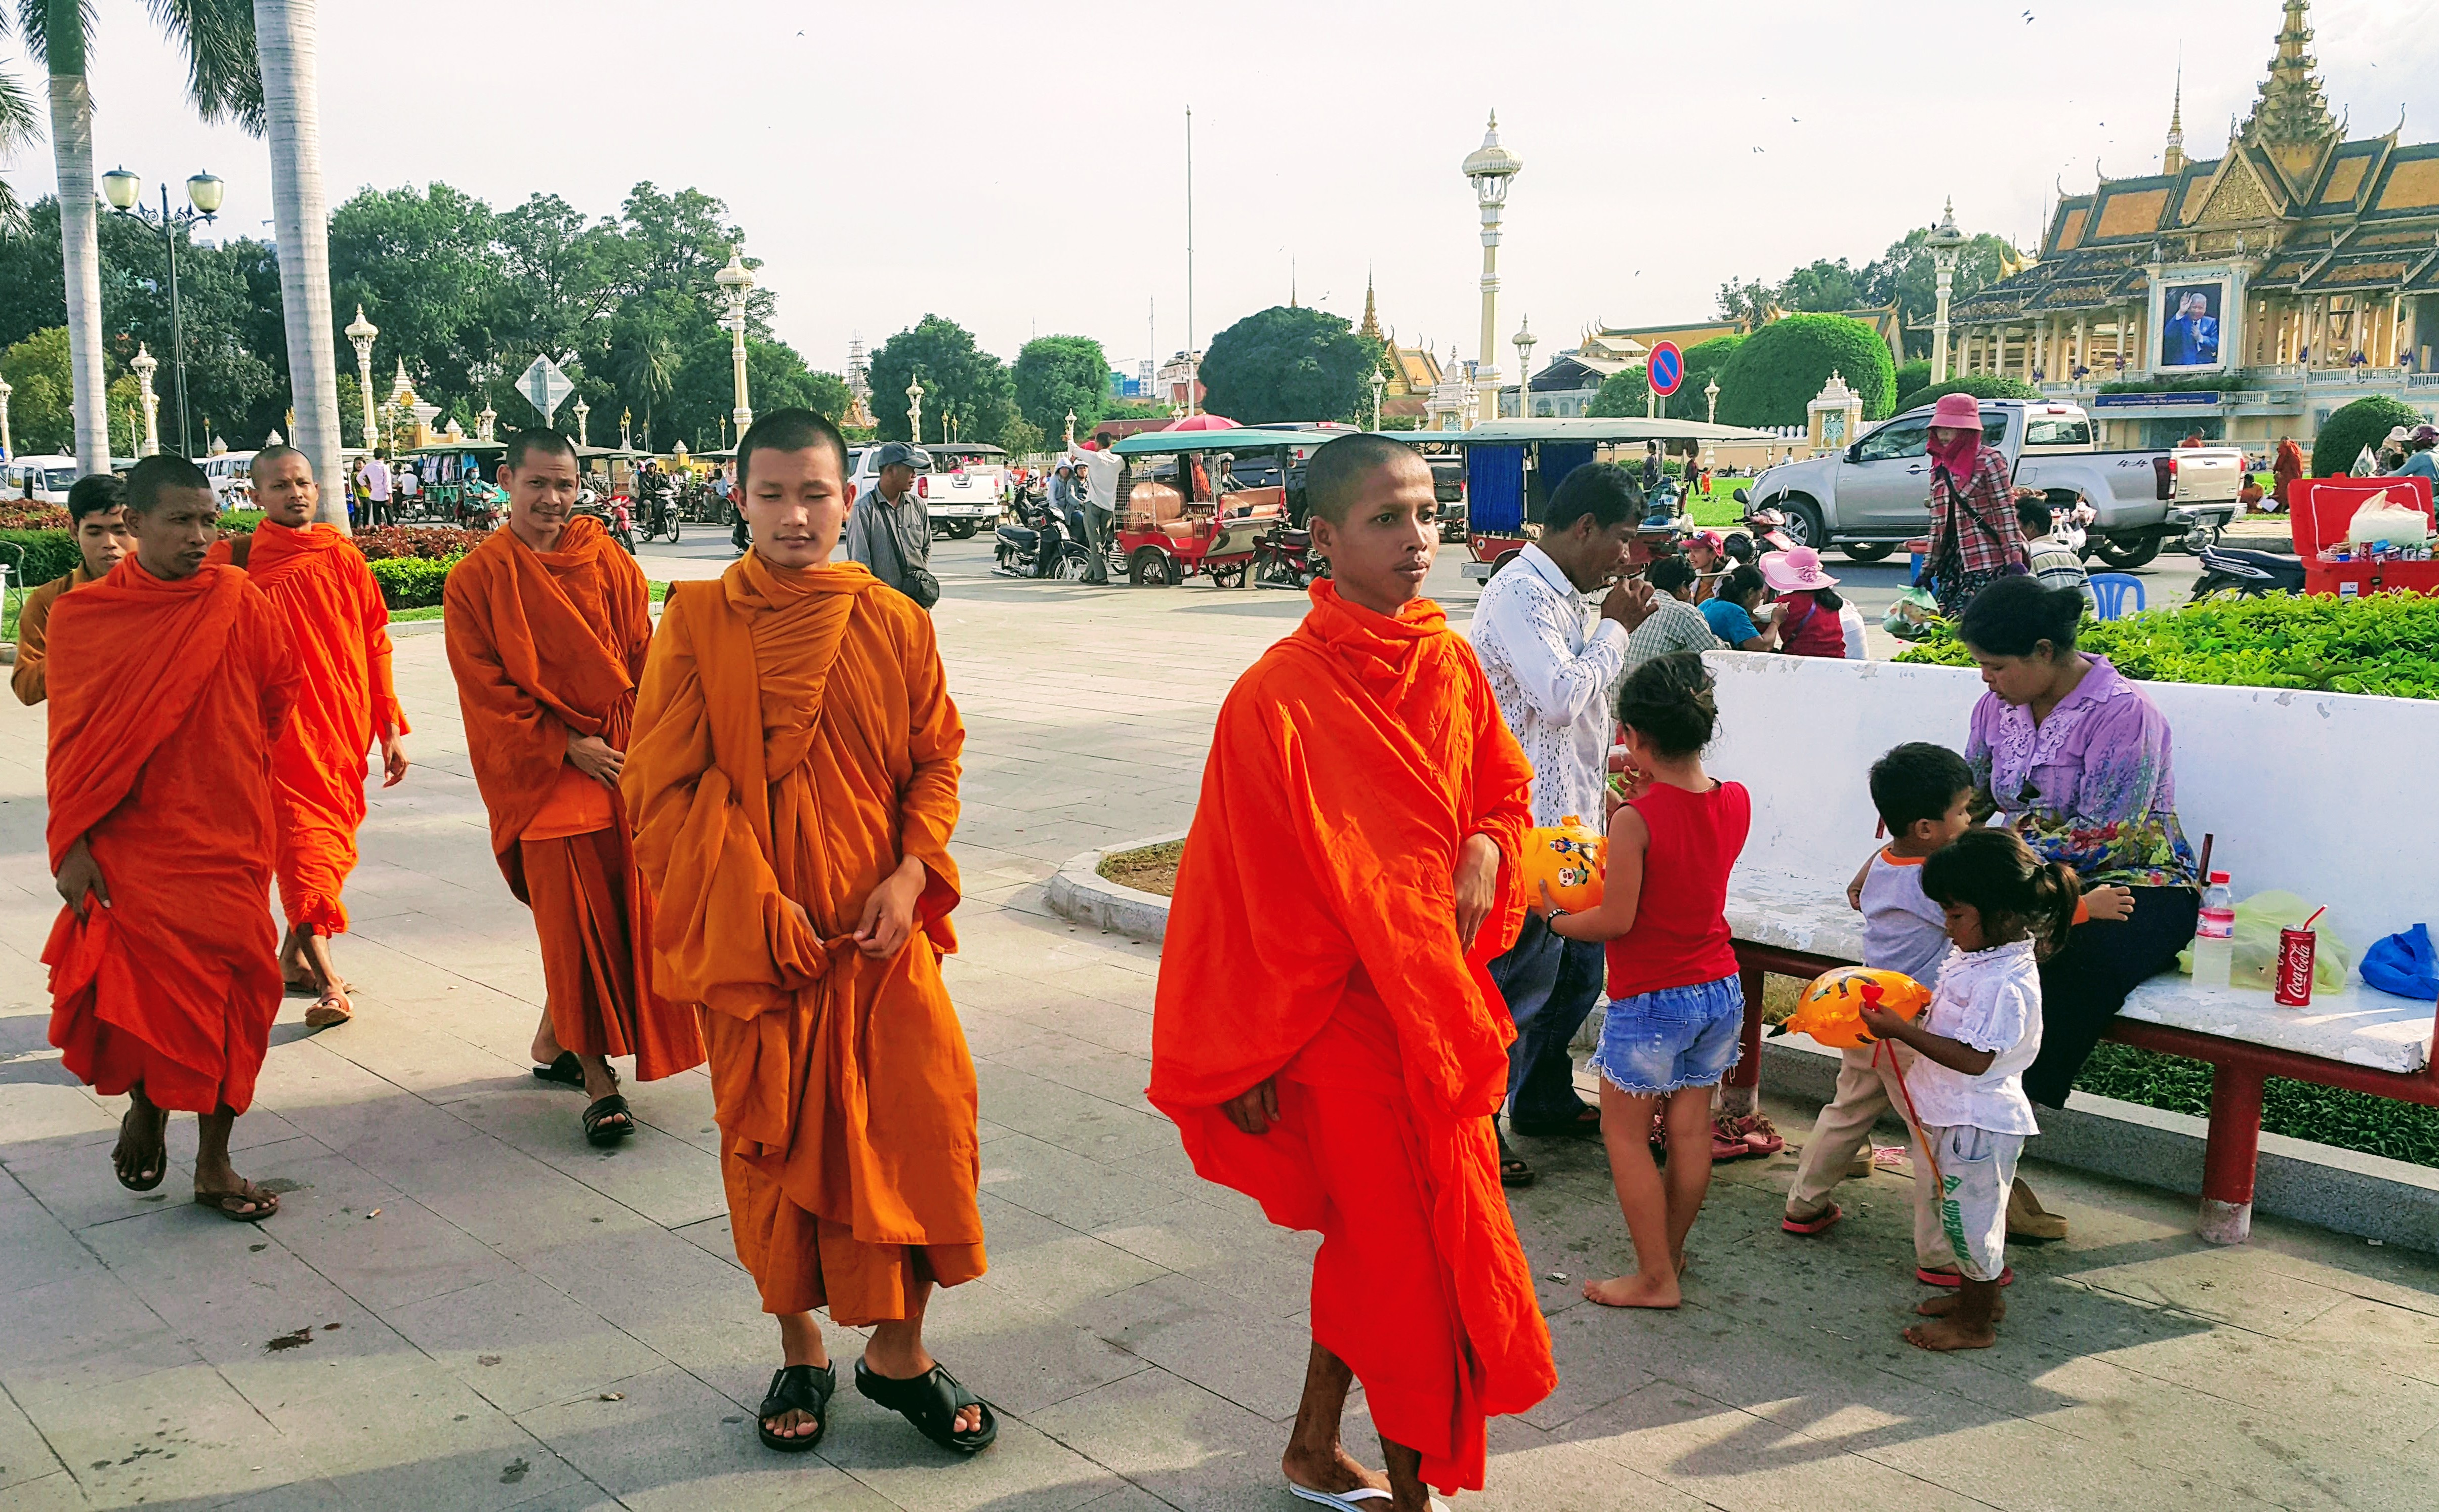 Kraliyet Sarayı Parkı'nda Yürüyen Budist Rahip Öğrencileri